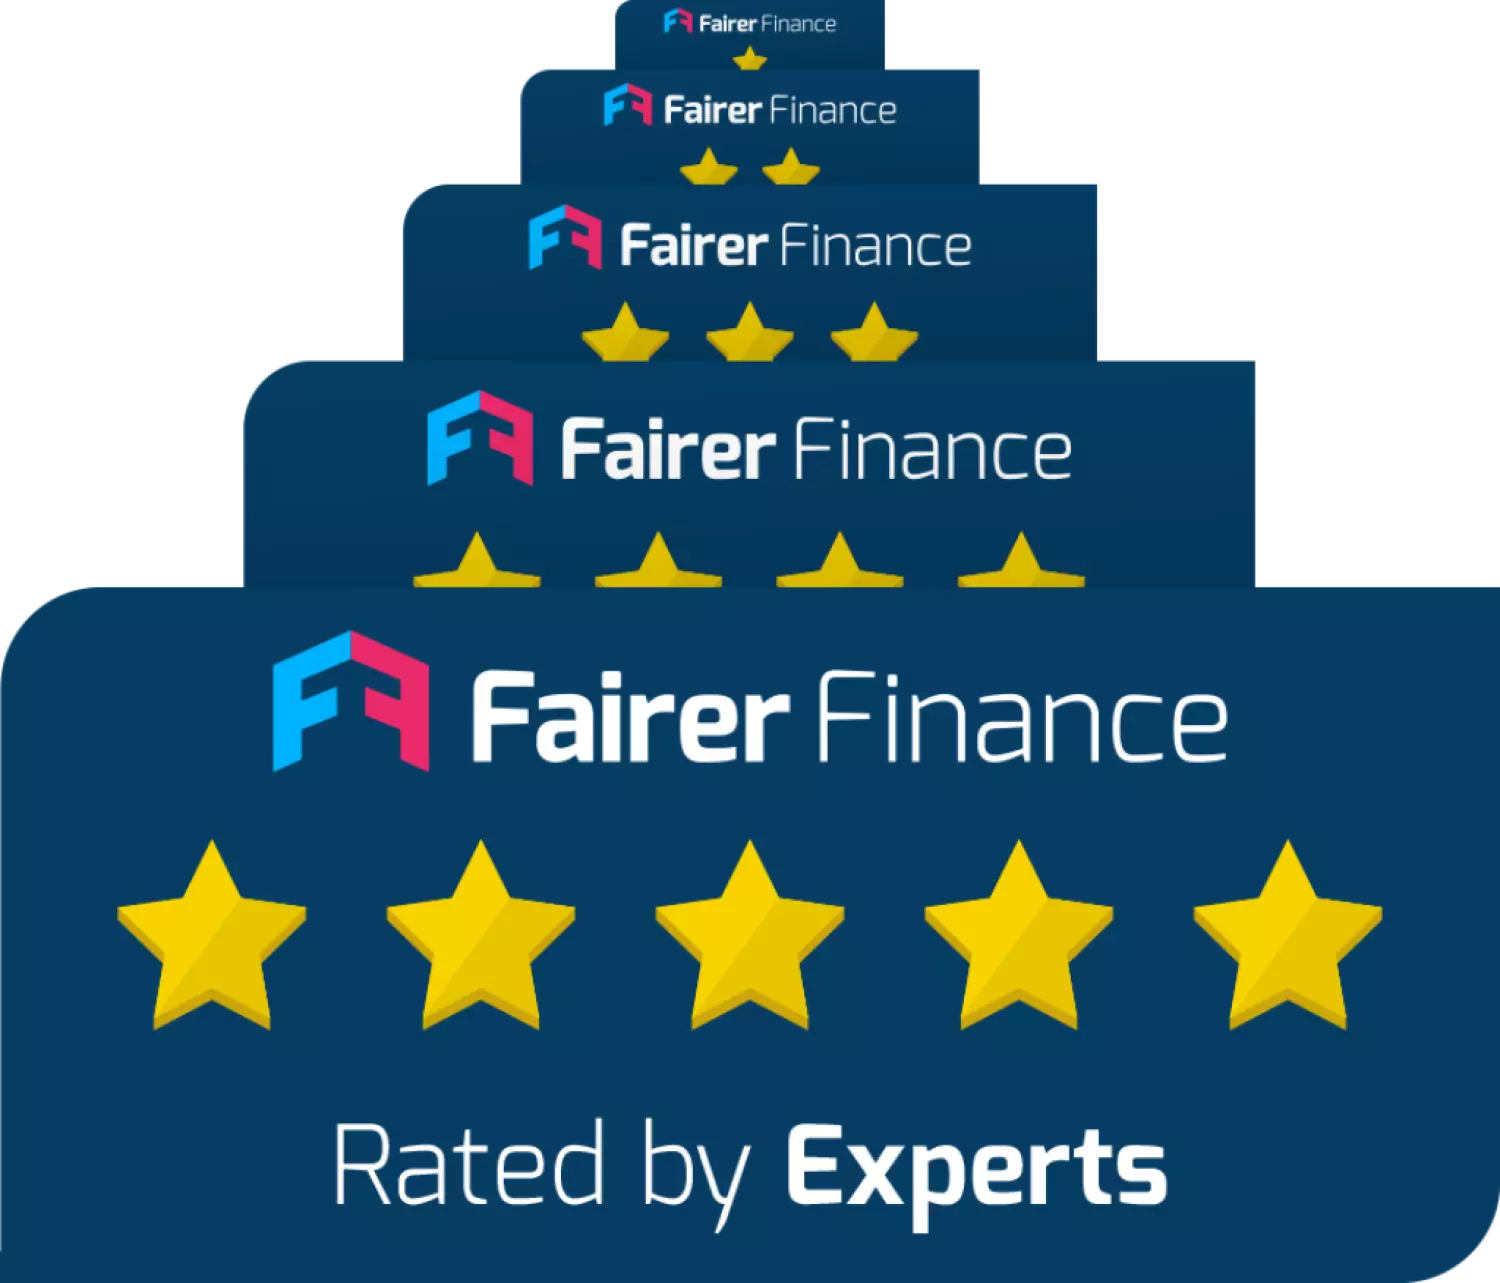 Fairer Finance star ratings